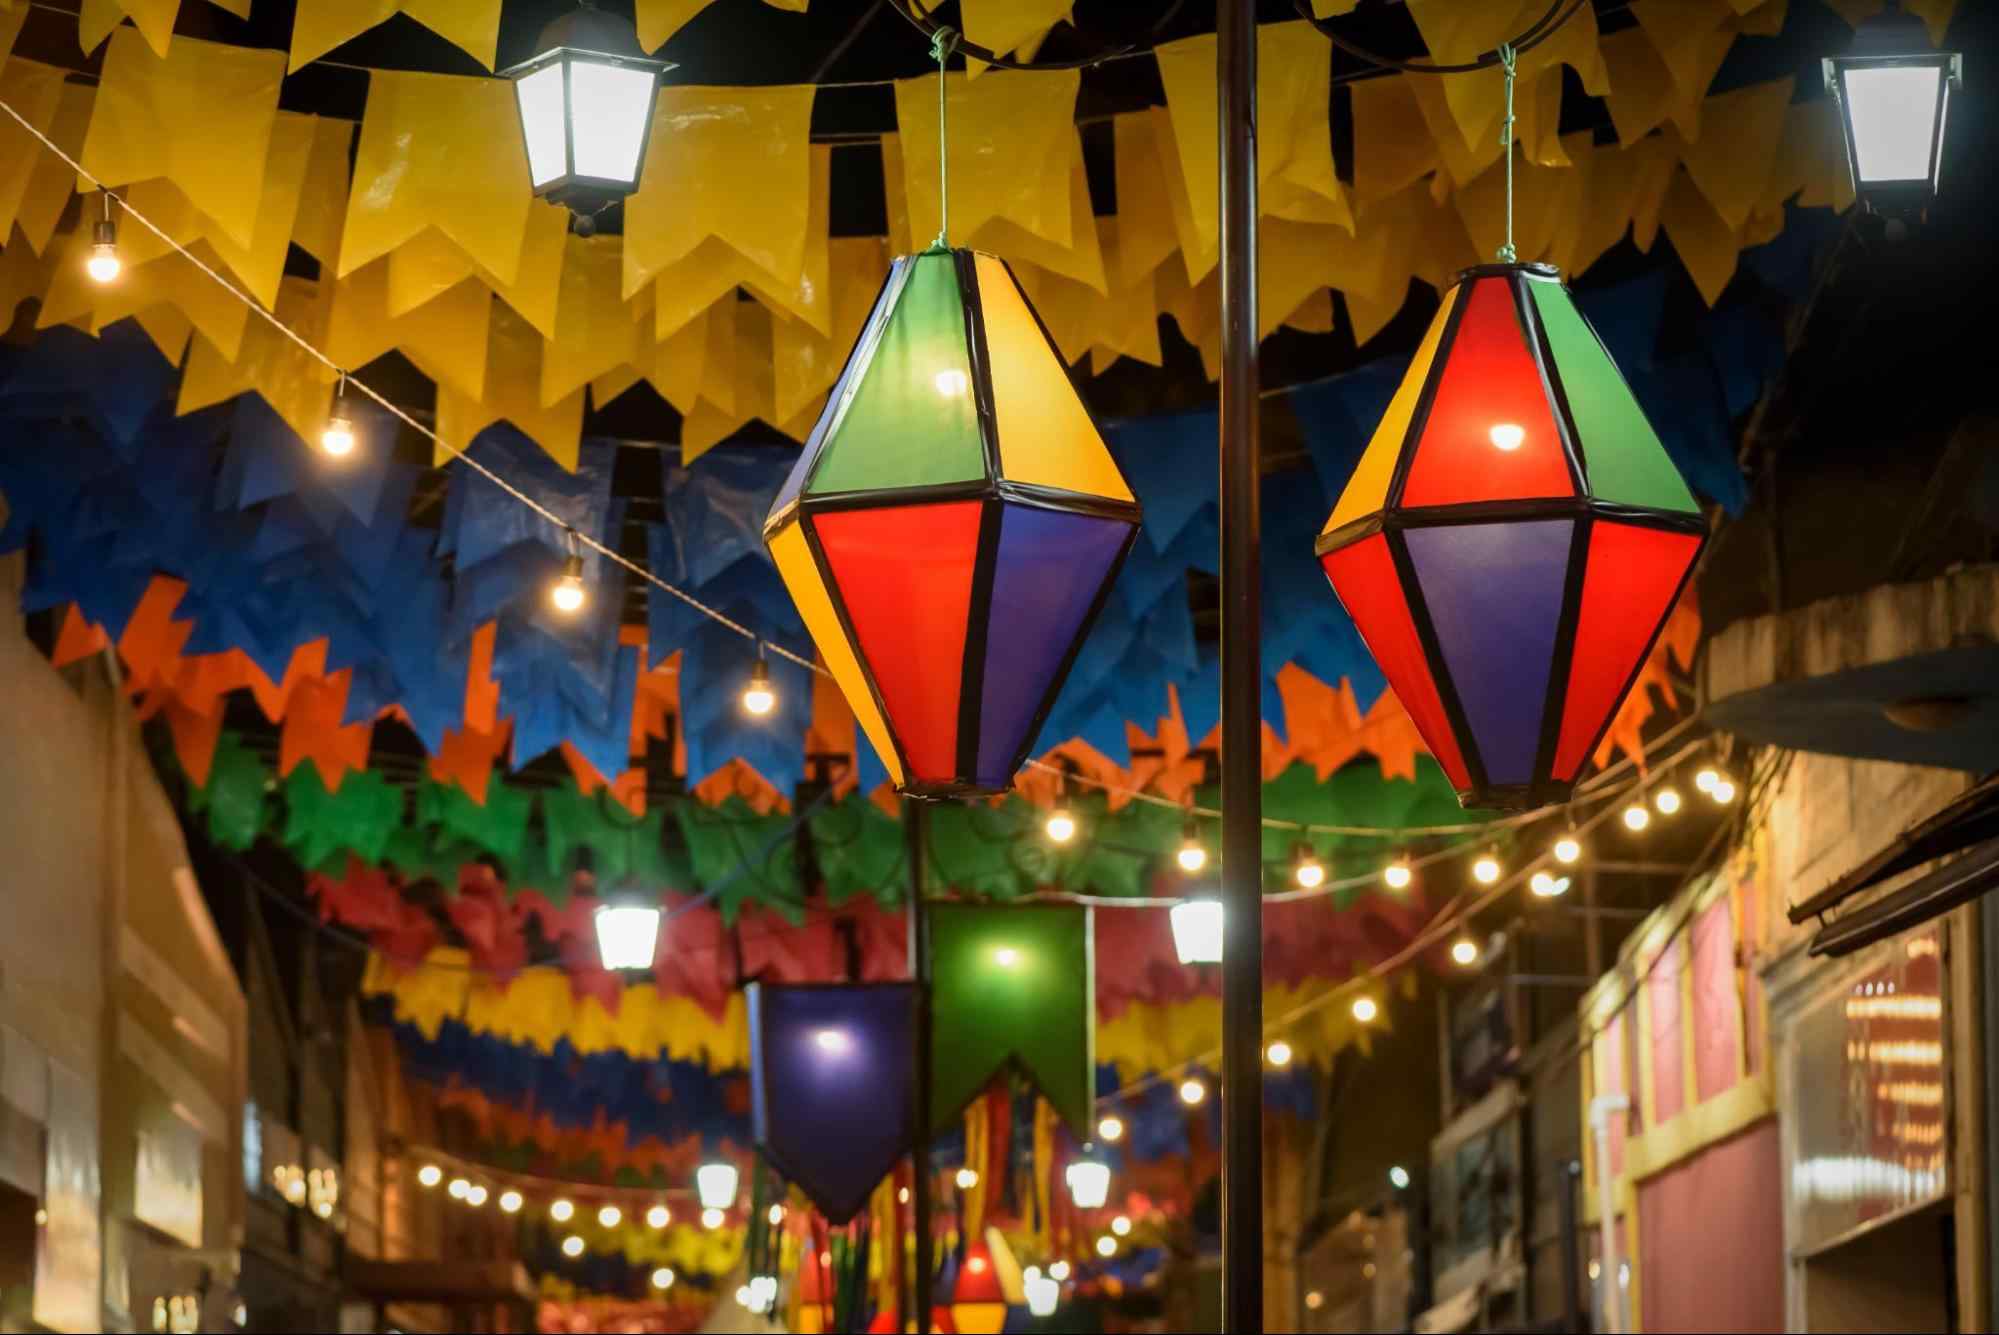 Rua decorada para o São João. Nos cordões estendidos entre as casas de um lado e de outro, estão penduradas bandeirolas coloridas, balões e luzes amarelas.